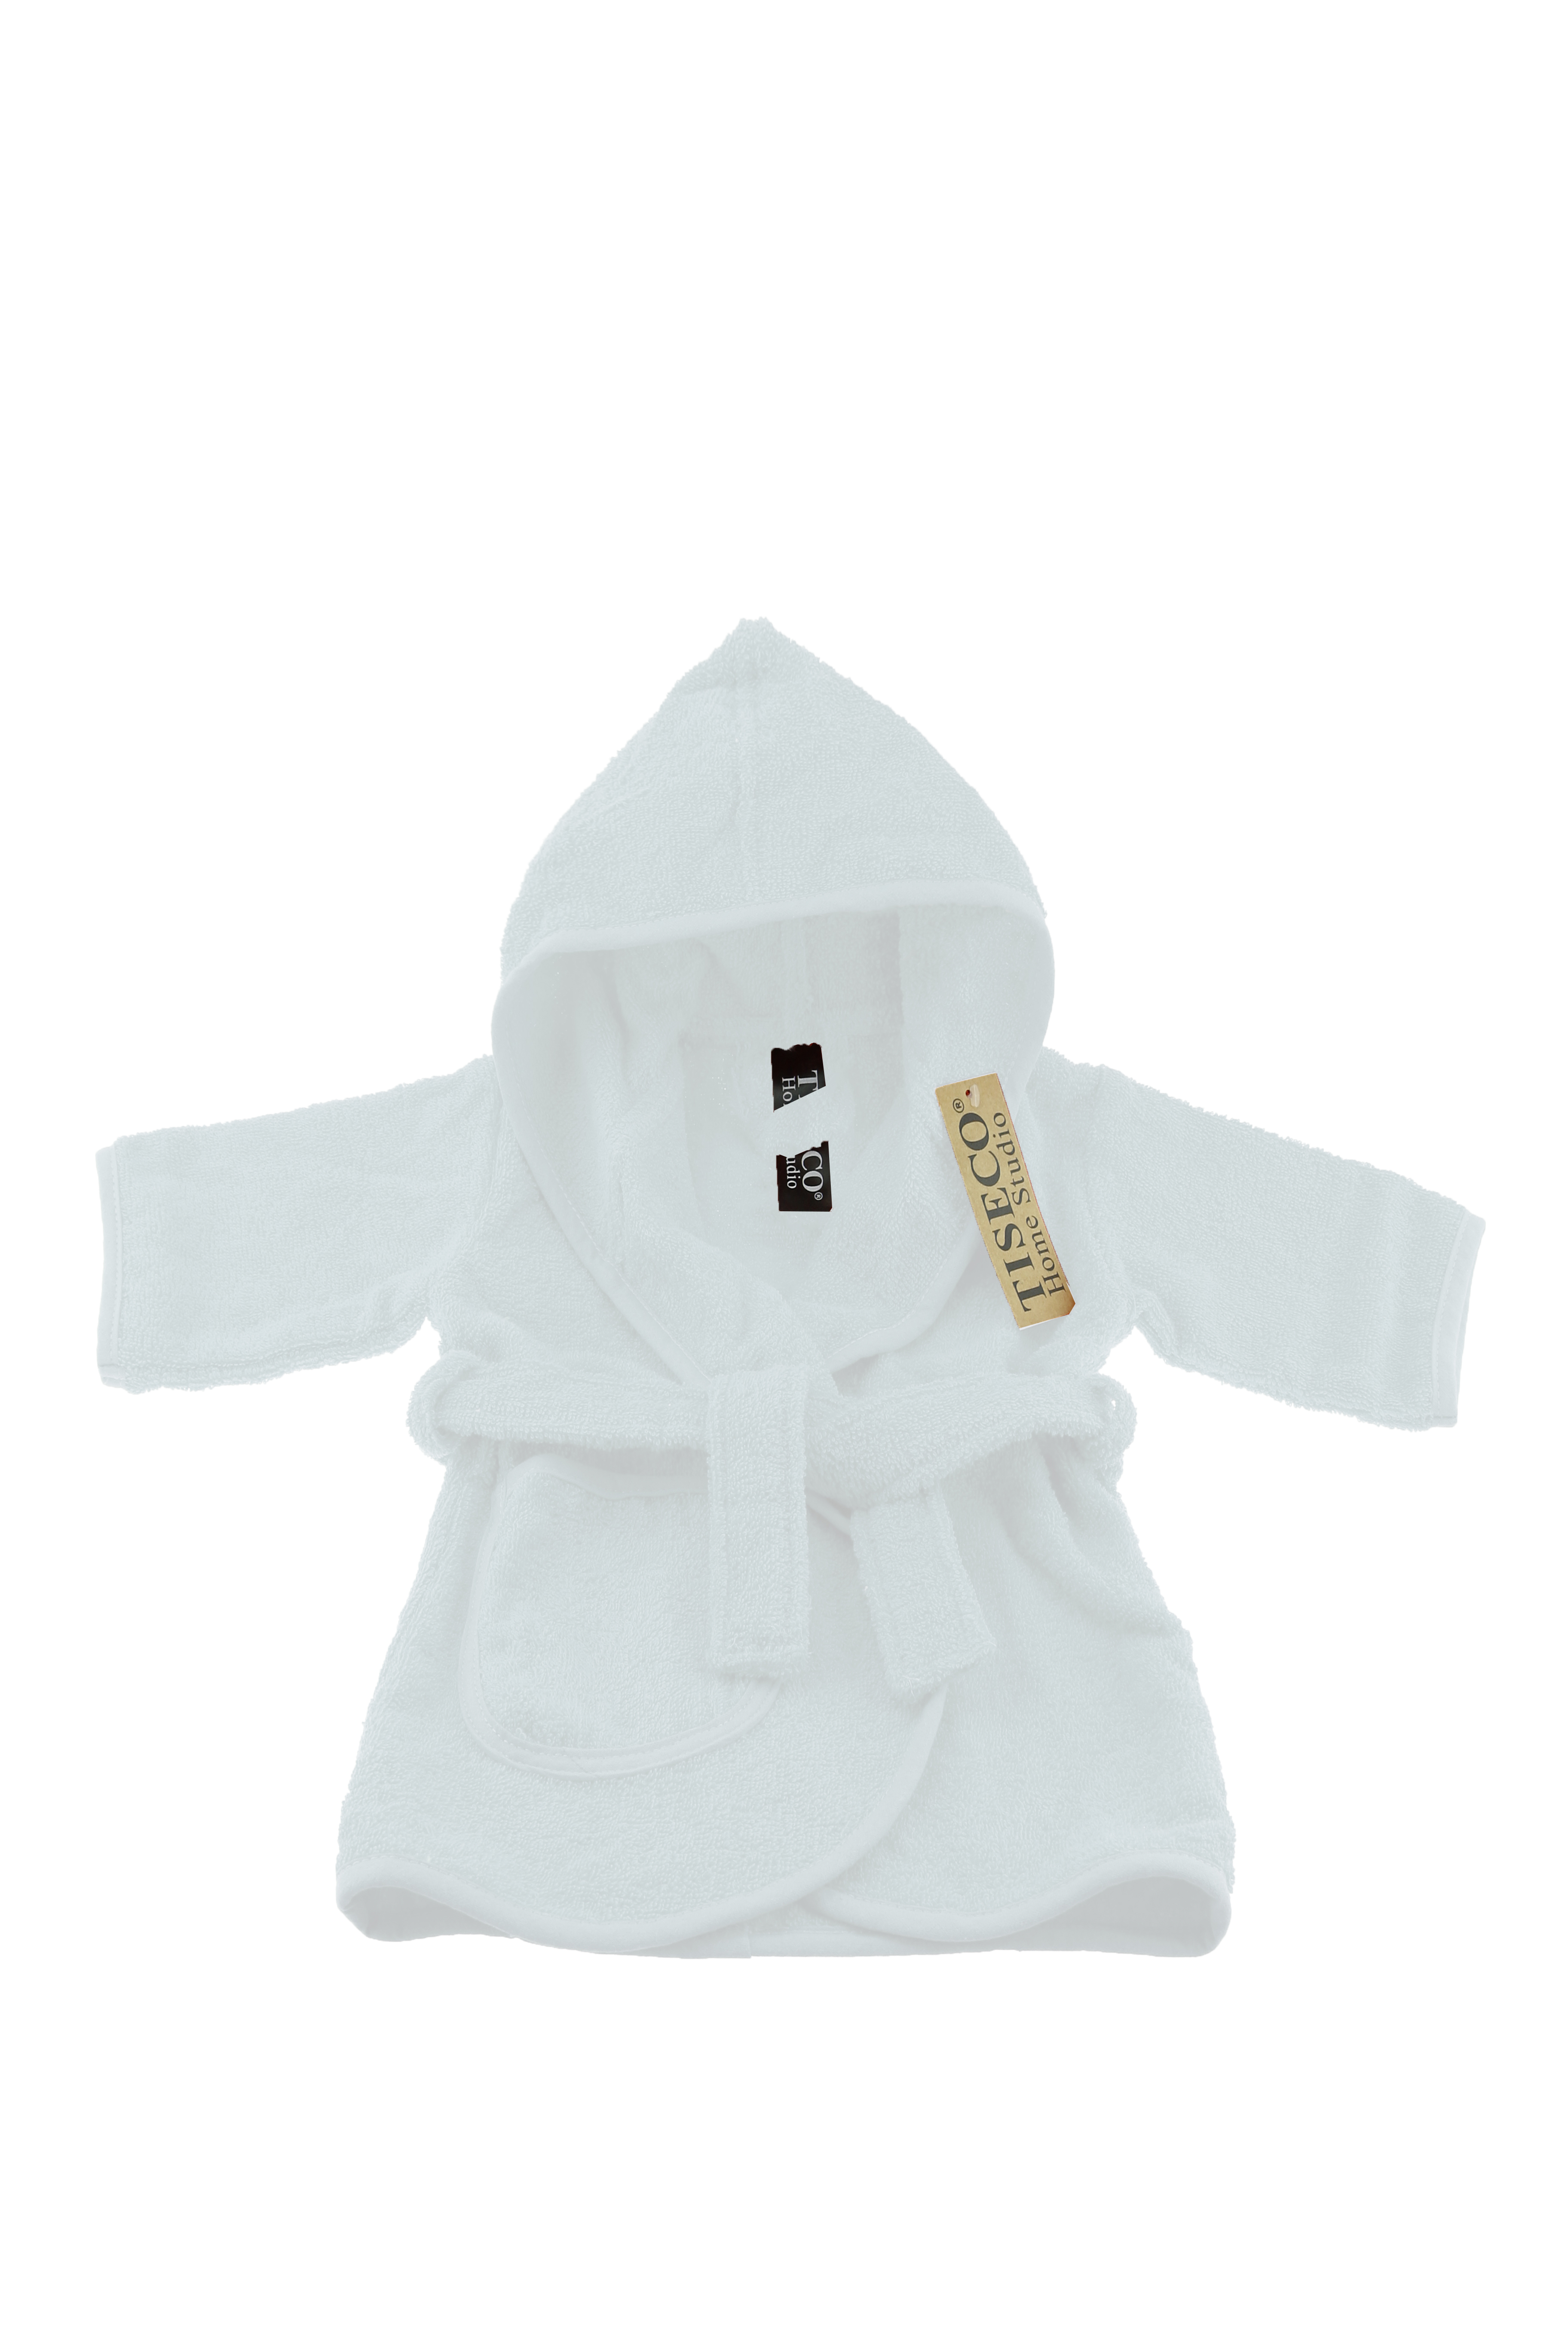 Baby badjas uni - 1-2 jaar, wit